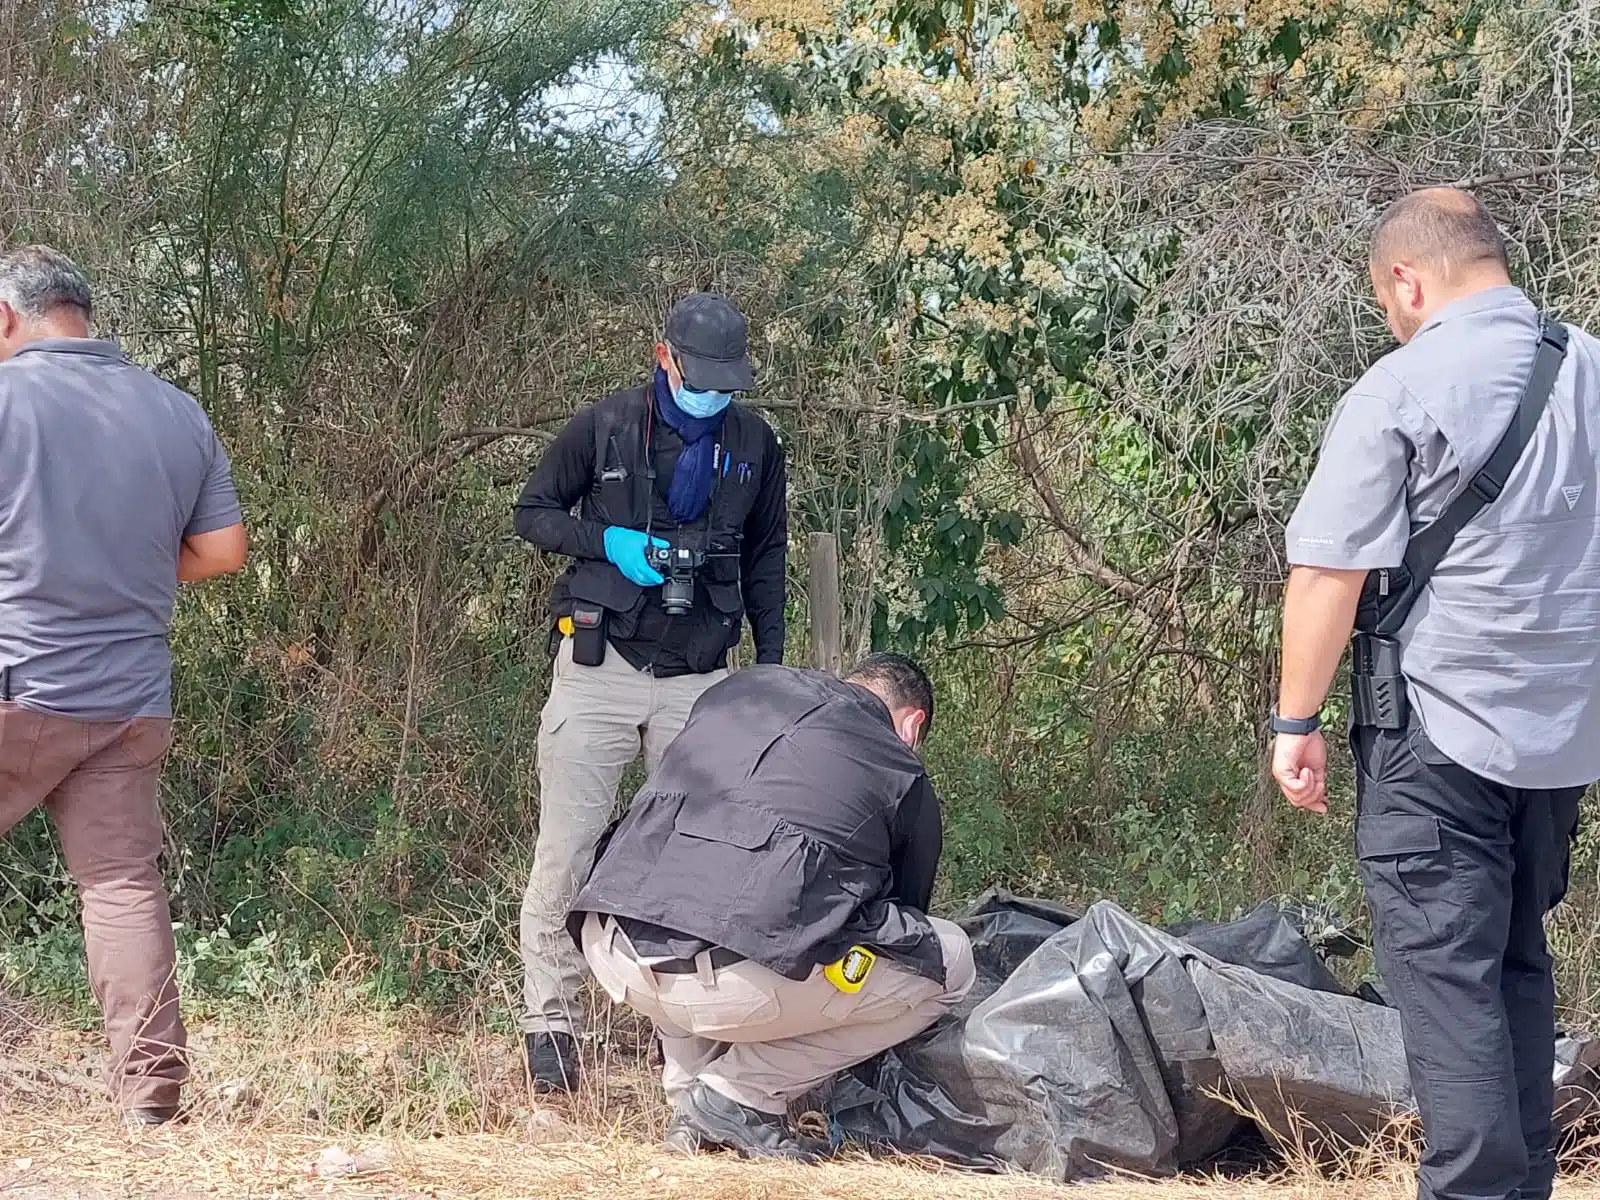 El cuerpo fue hallado envuelto en plástico negro al oriente de Culiacán.